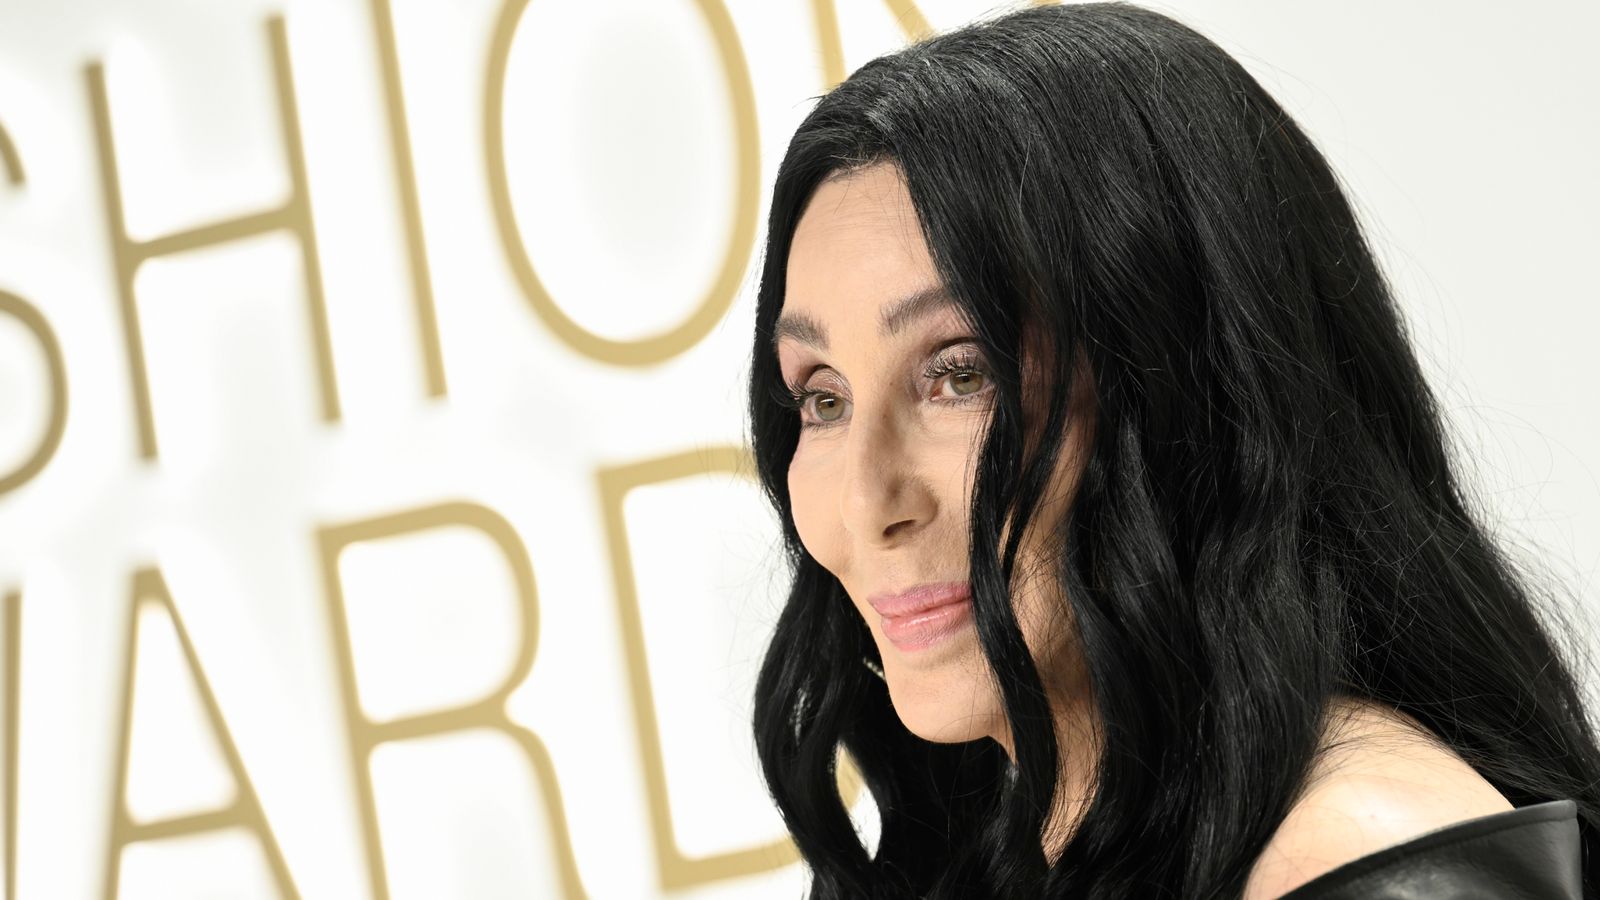 Cher, 76, memicu spekulasi dia bertunangan dengan pacarnya, 36, dengan cincin berlian Foto |  Berita Ent & Seni